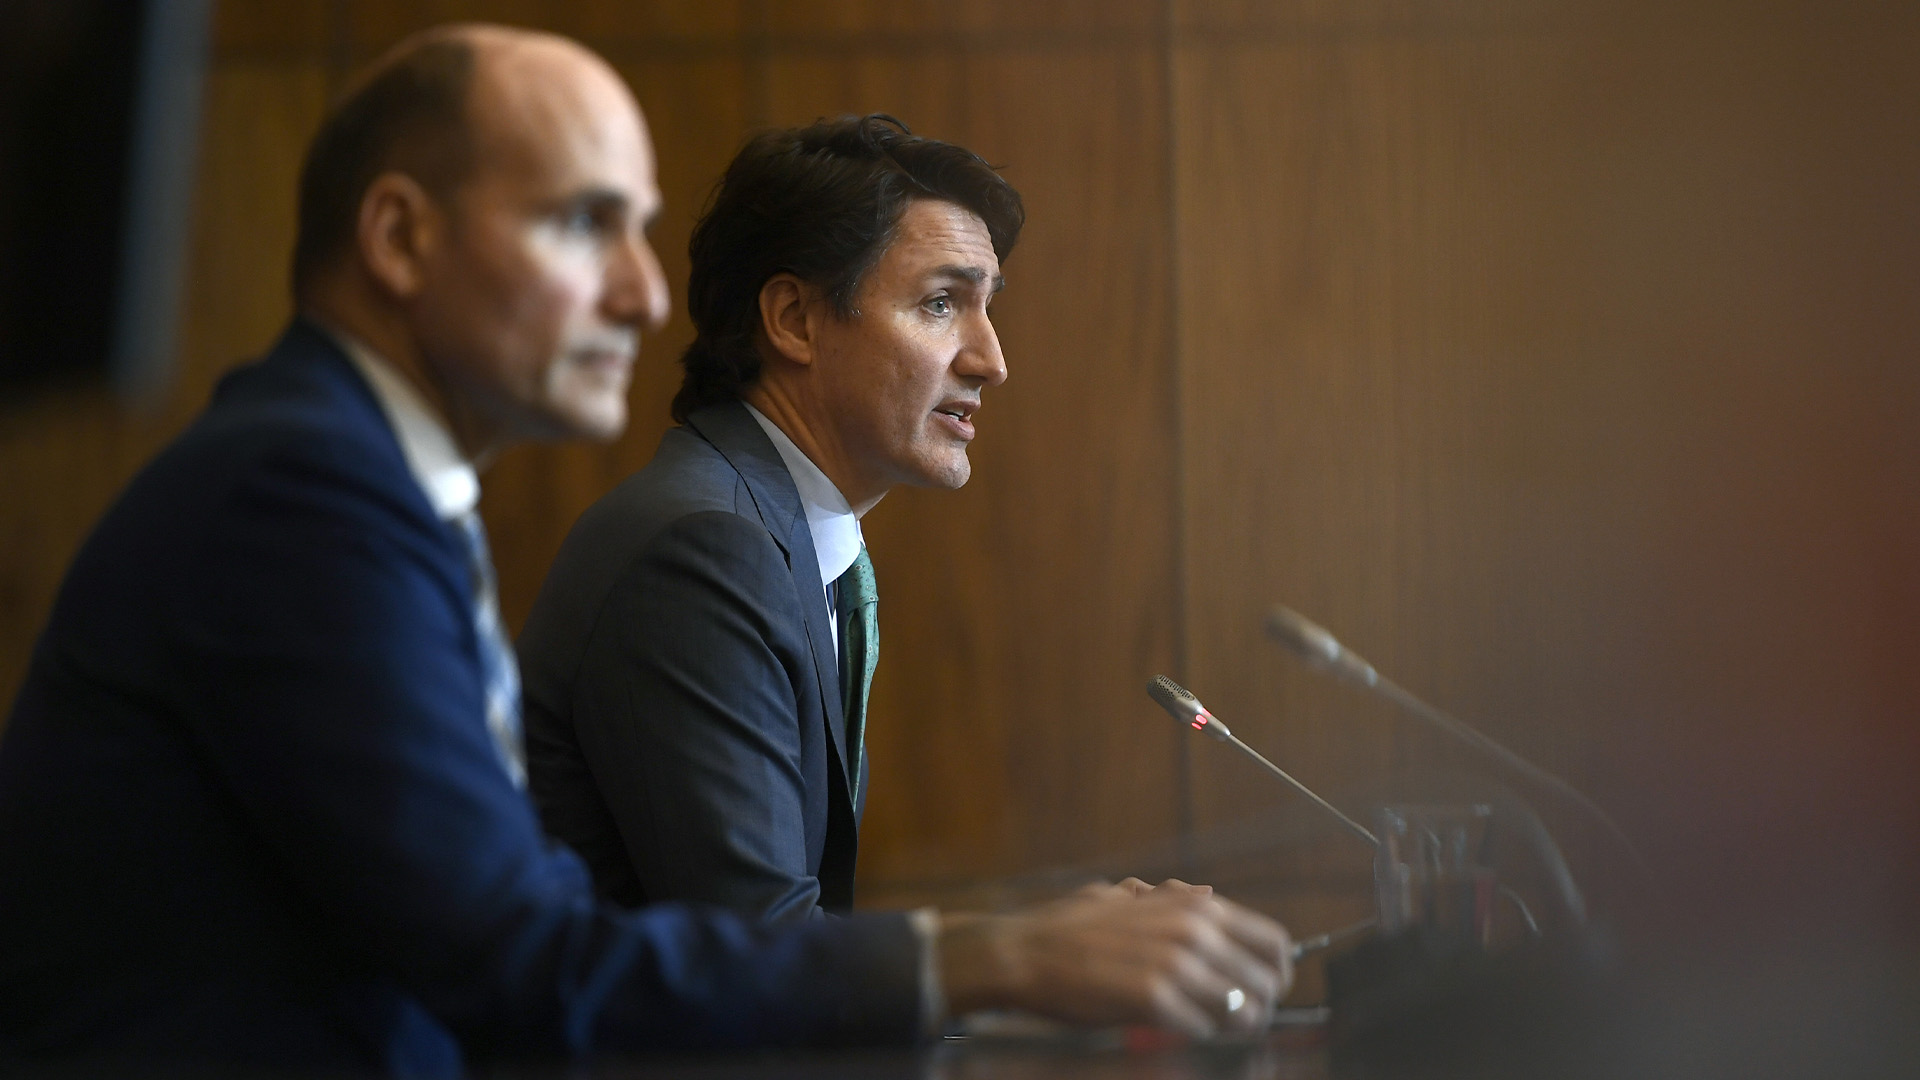 Le premier ministre Justin Trudeau et le ministre de la Santé Jean-Yves Duclos participent à une conférence de presse à Ottawa, le mercredi 5 janvier 2022.